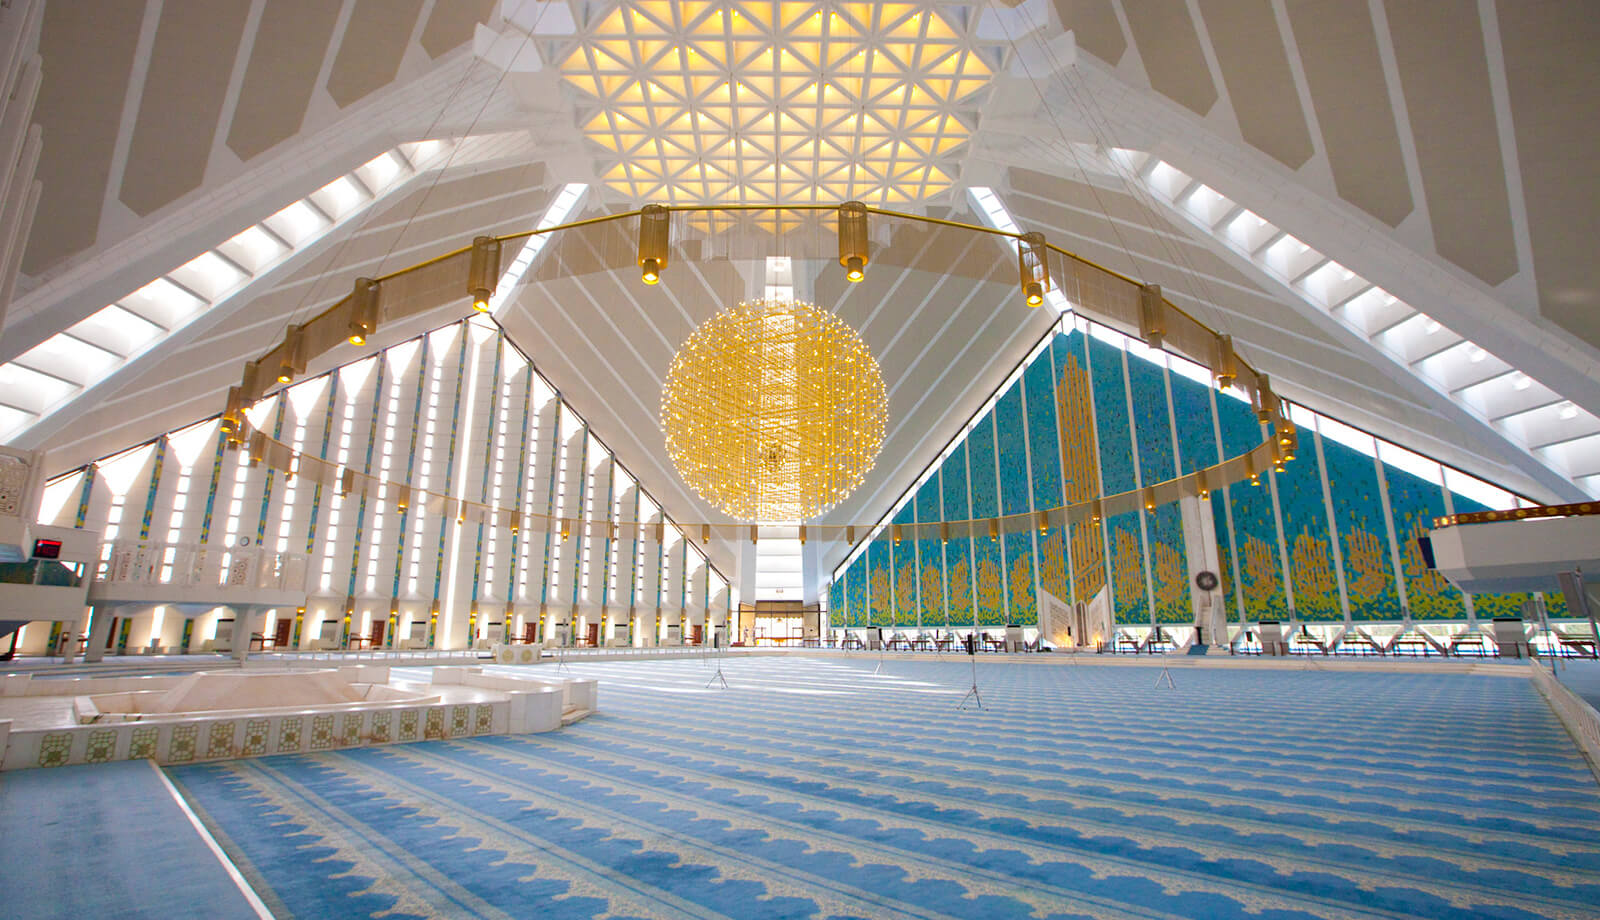 Interior of faisal mosque